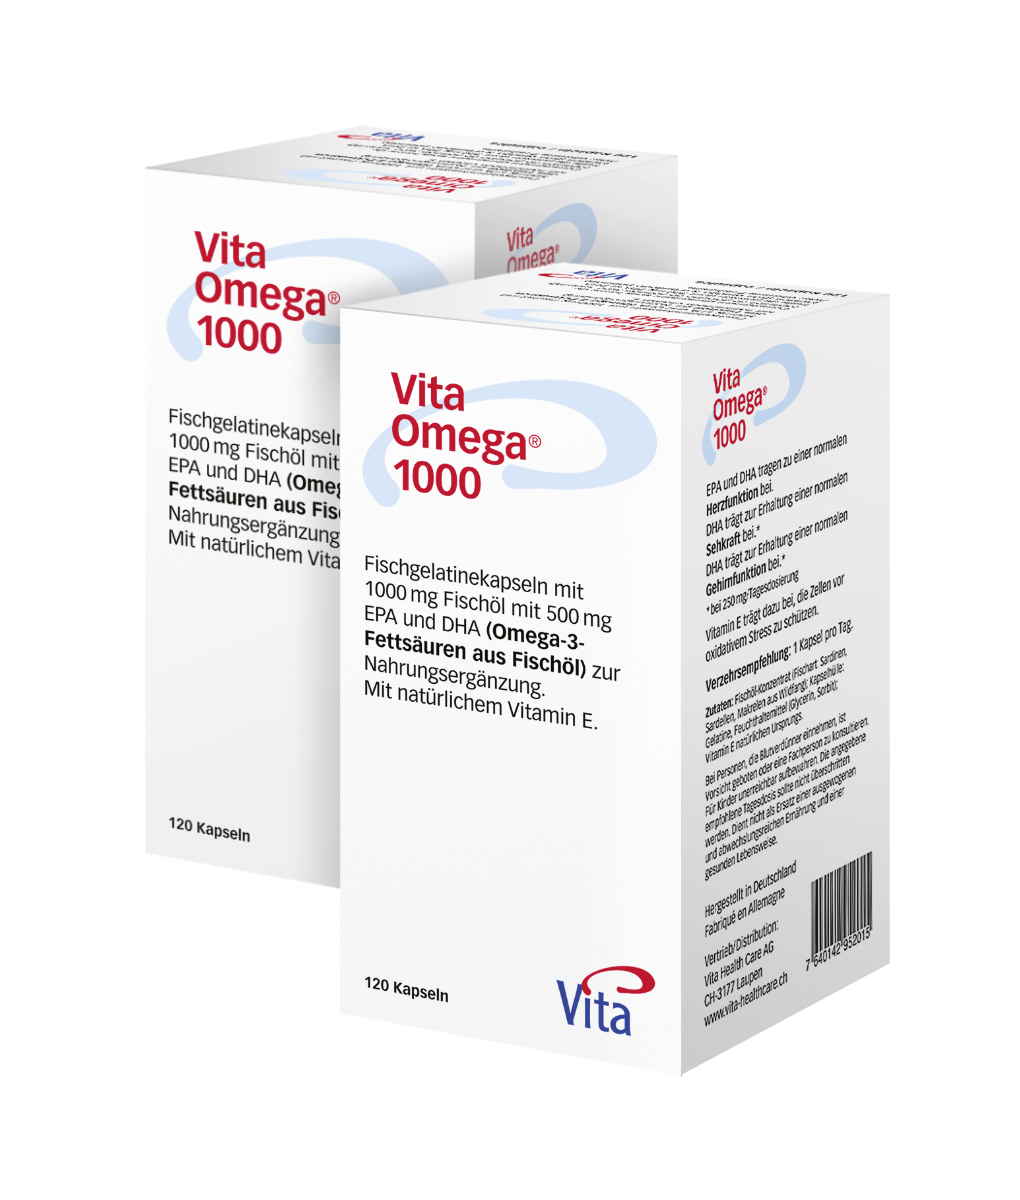 Vita Omega® 1000 &fish oil-Double pack 